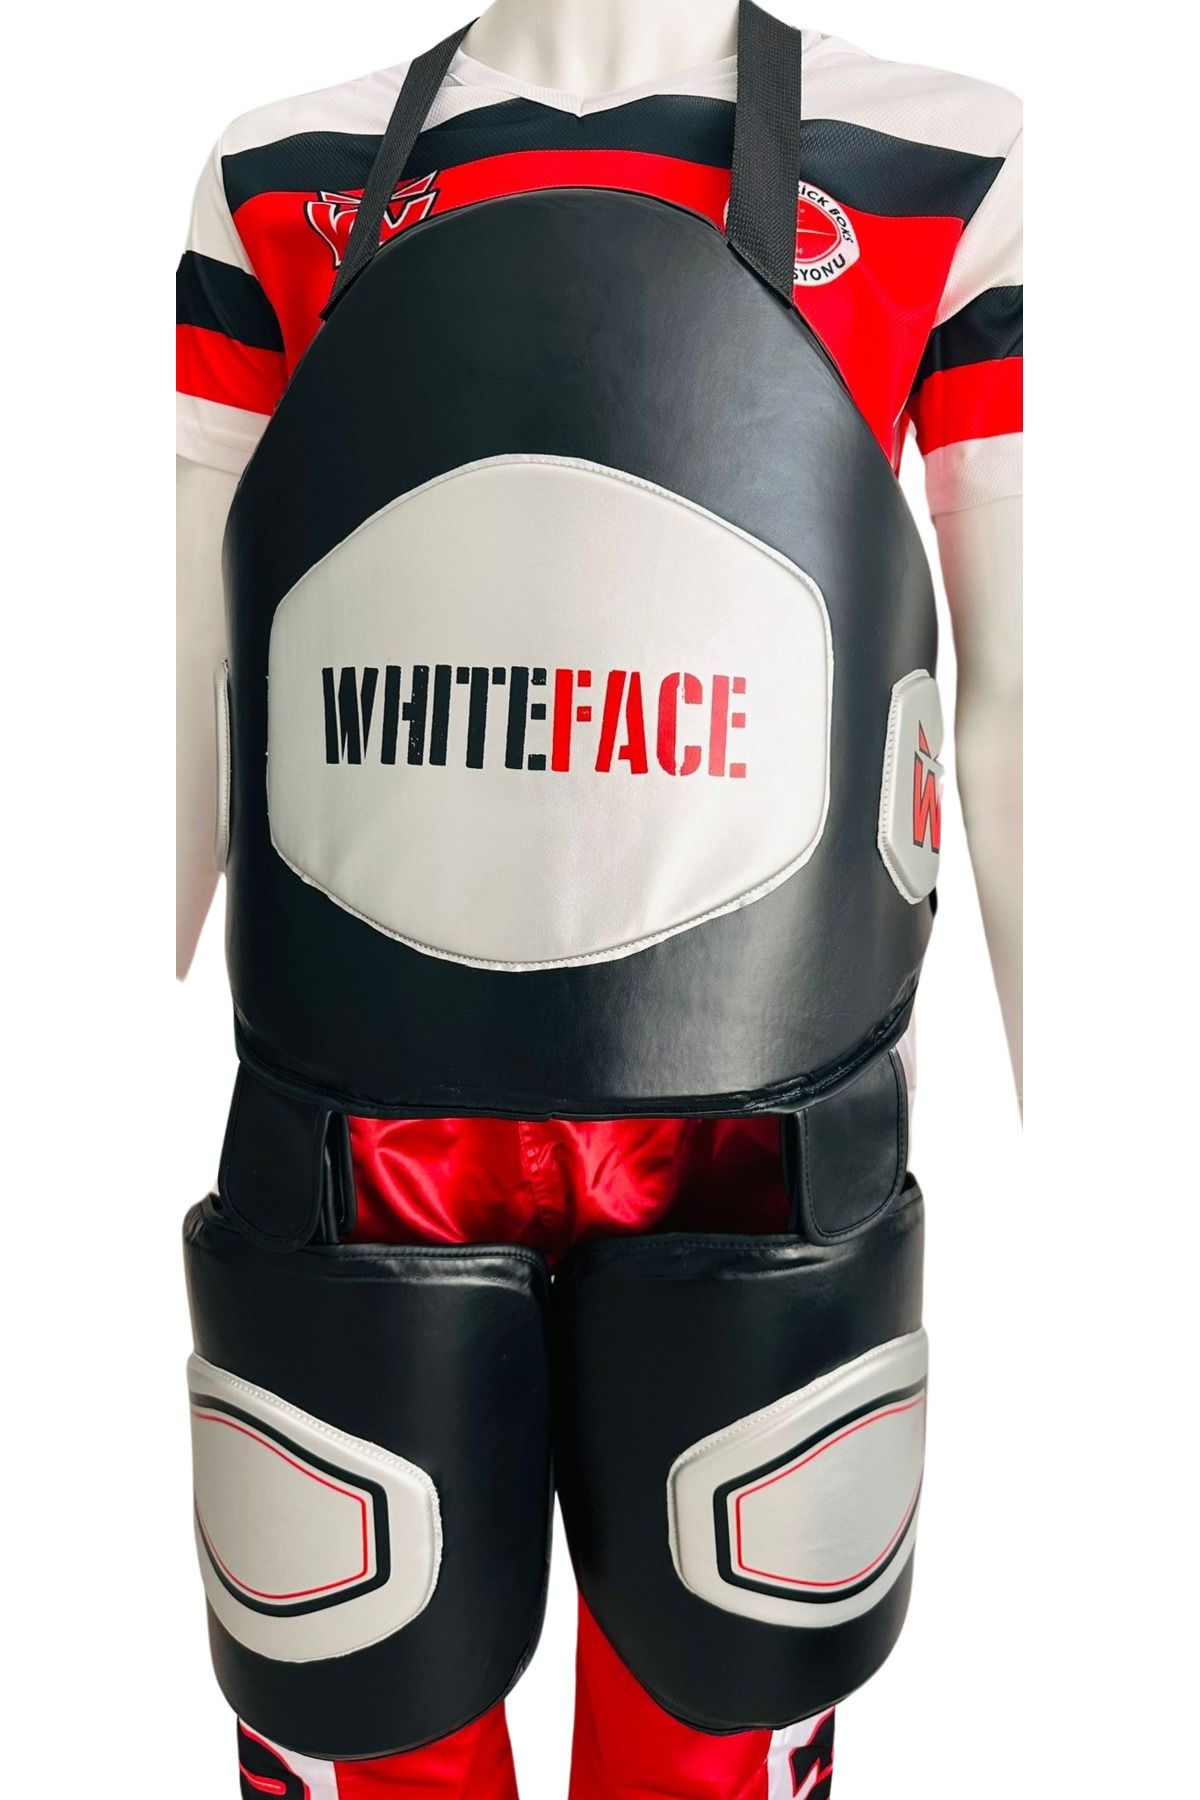 whiteface Antrenör Bacak ve Göğüs Koruyucu Takım